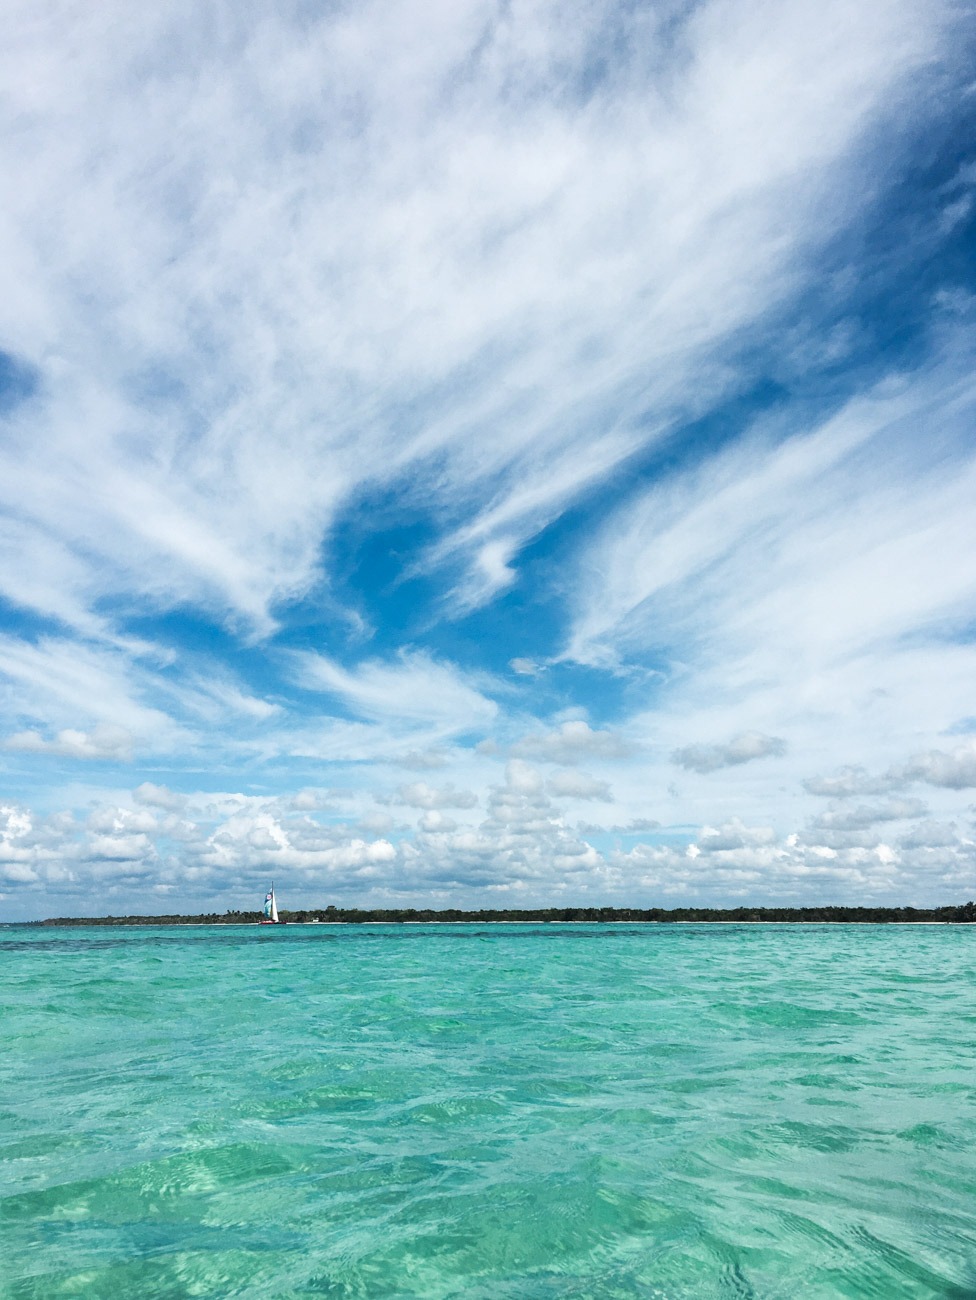 Türkisblaues, hüfthohes Wasser im Piscina Natural (Sandbank) vor der Küste der Isla Saona in der Dominikanischen Republik